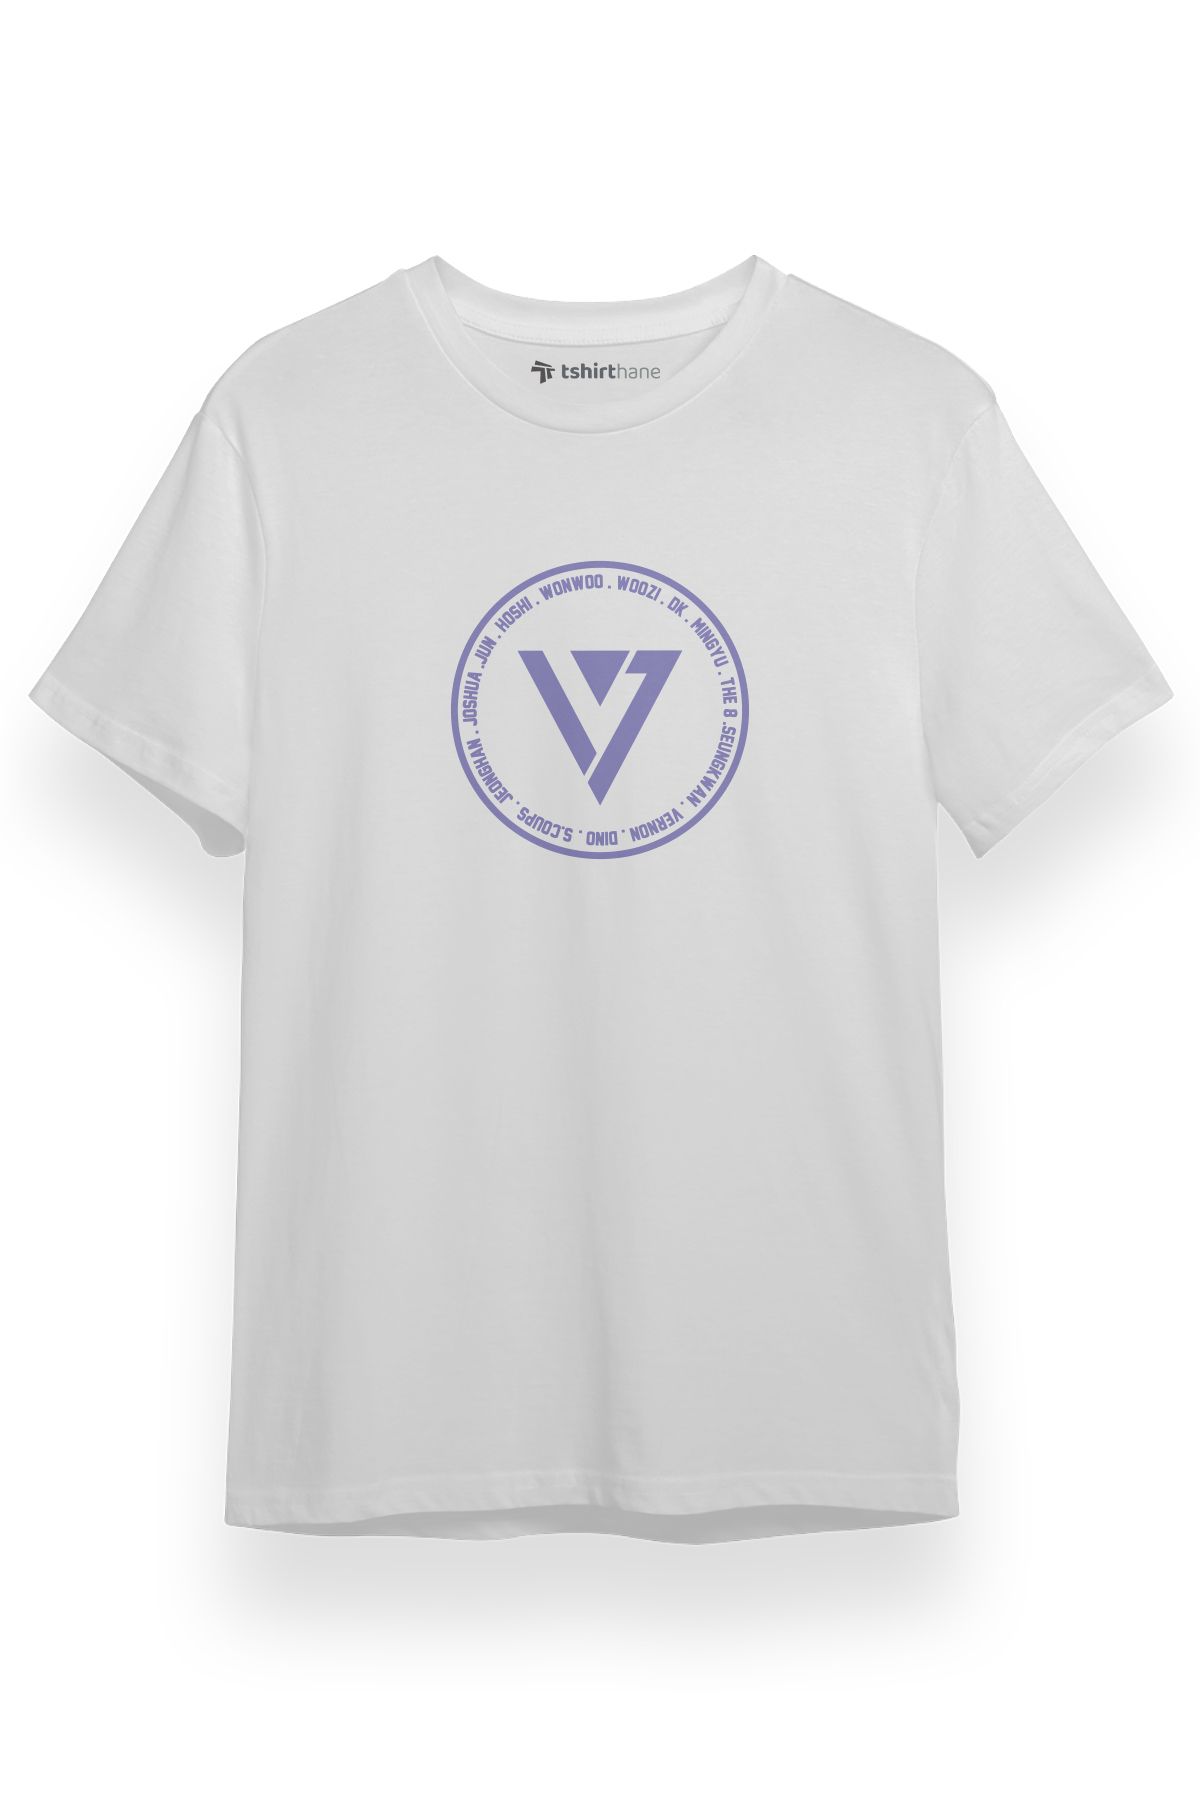 Seventeen Members Logo Beyaz Kısa kol Erkek Tshirt